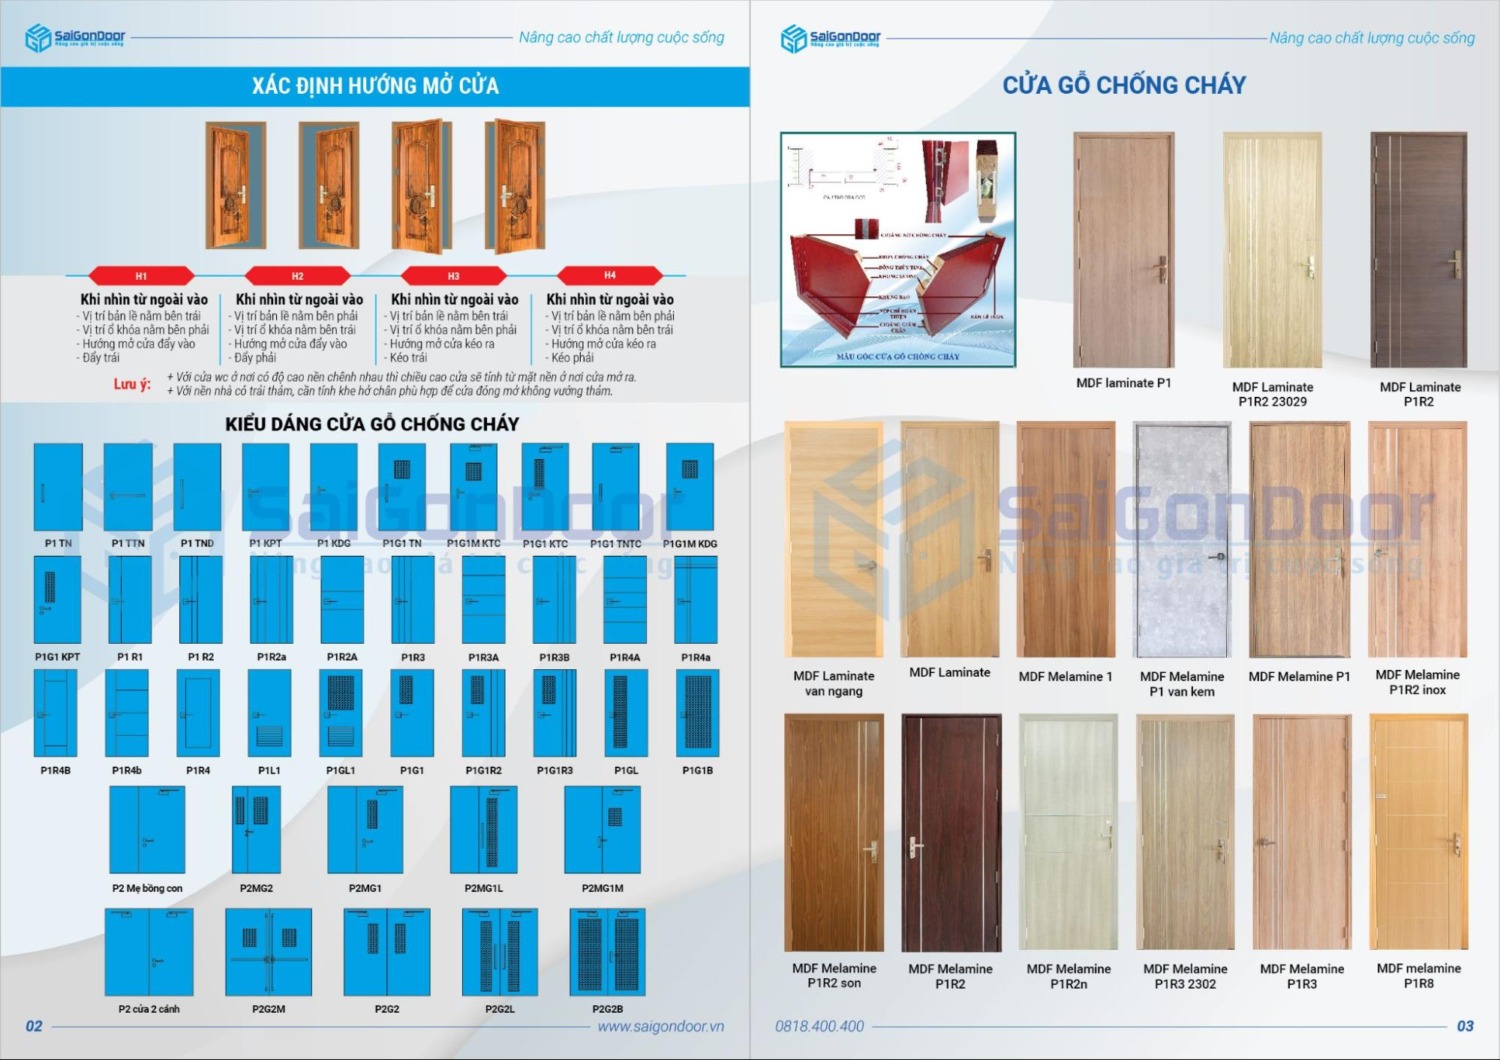 Catalogue cửa gỗ chống cháy - Kiểu dáng và mẫu cửa